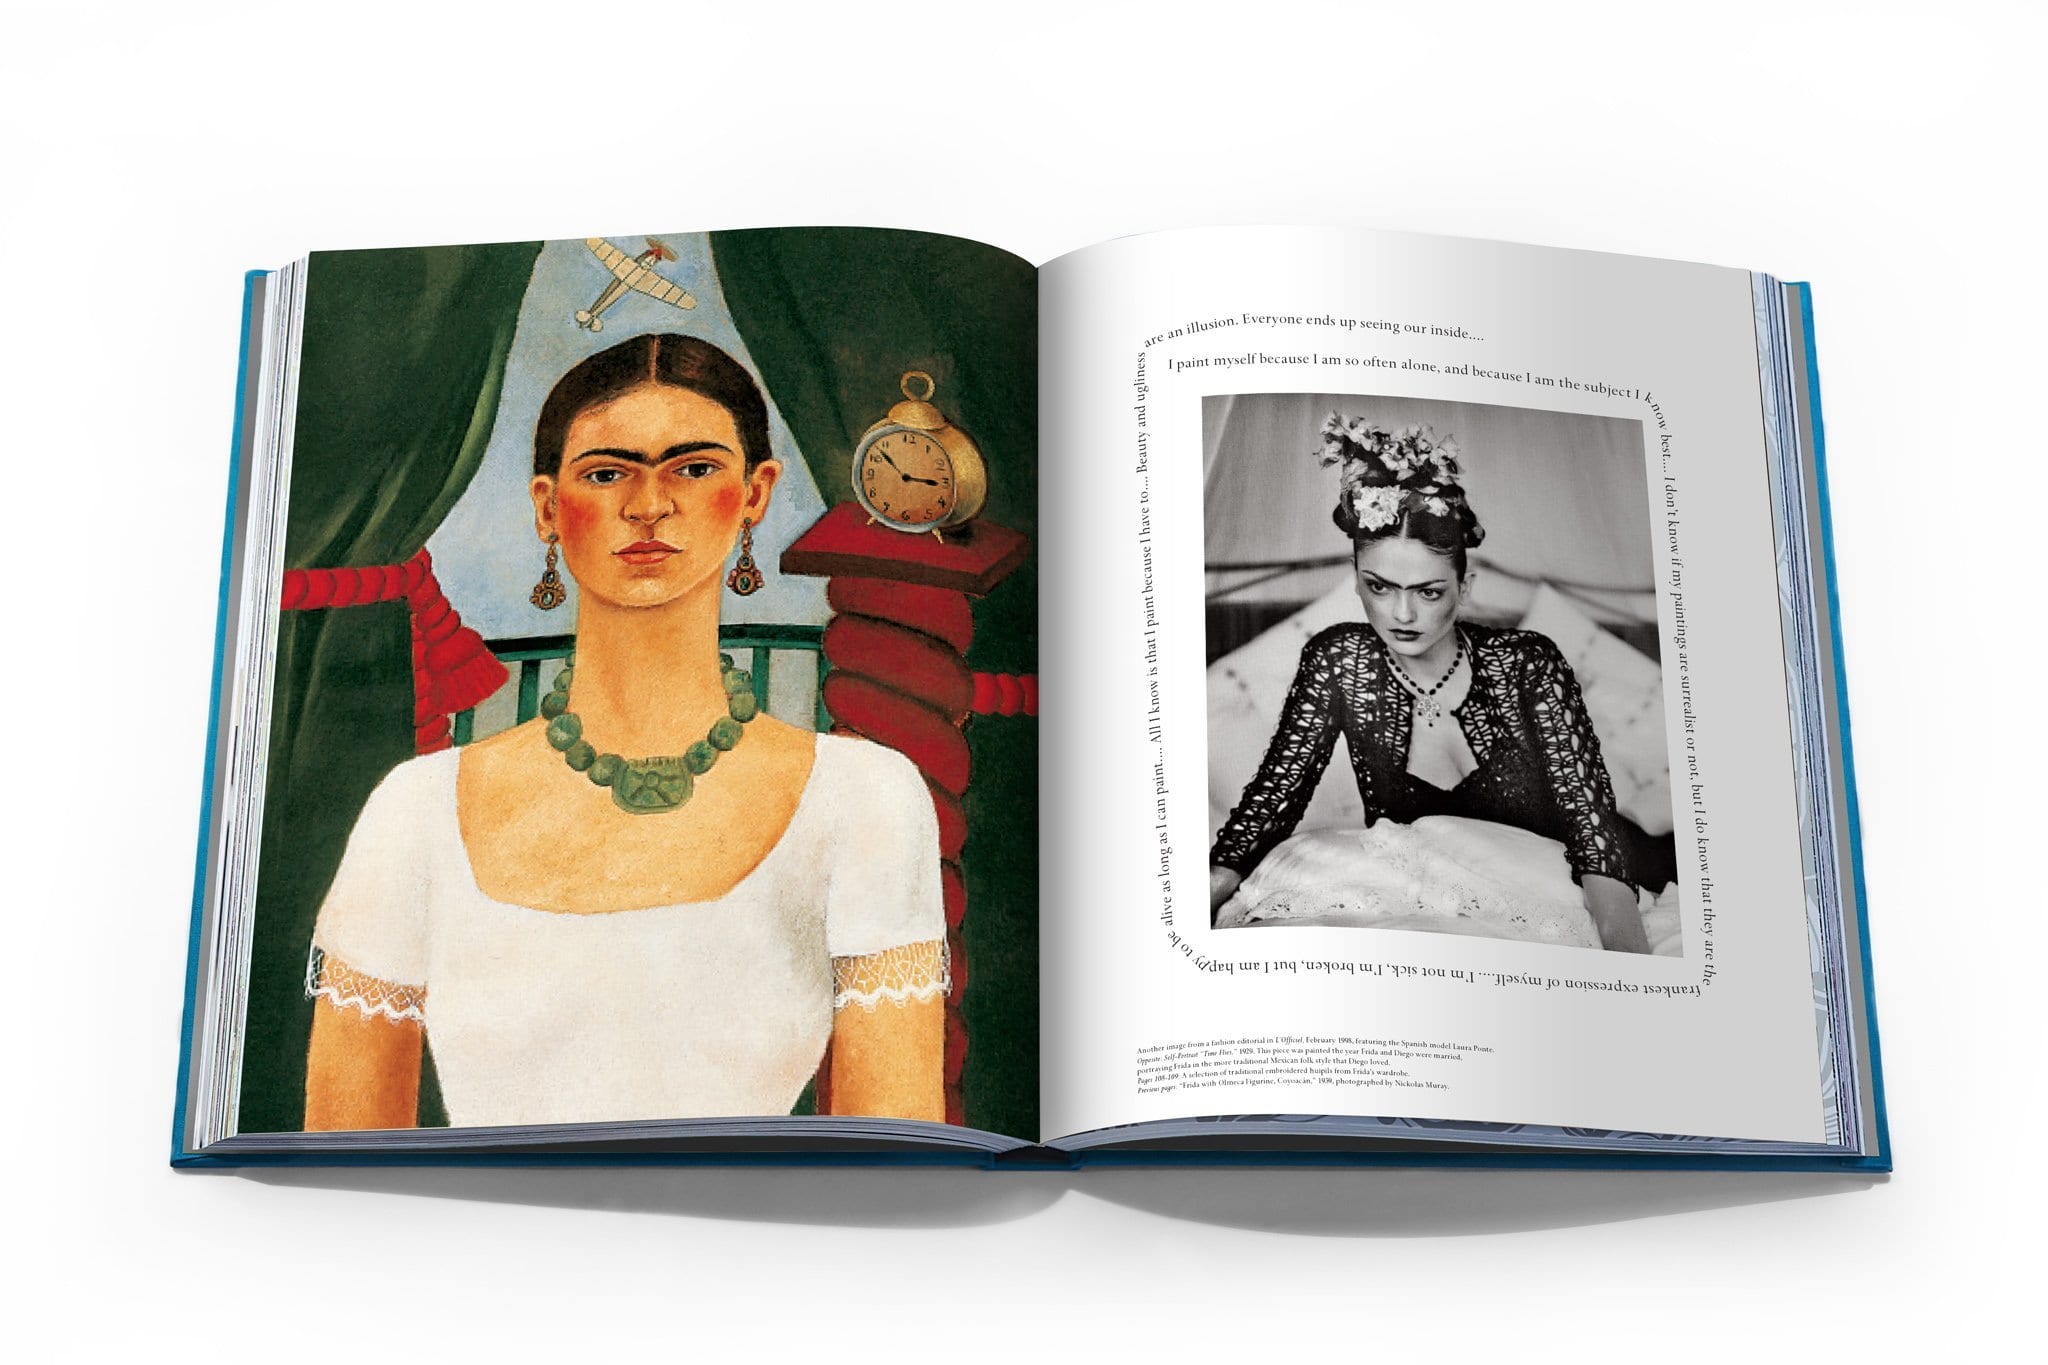 Assouline Frida Kahlo: moda como el arte de ser